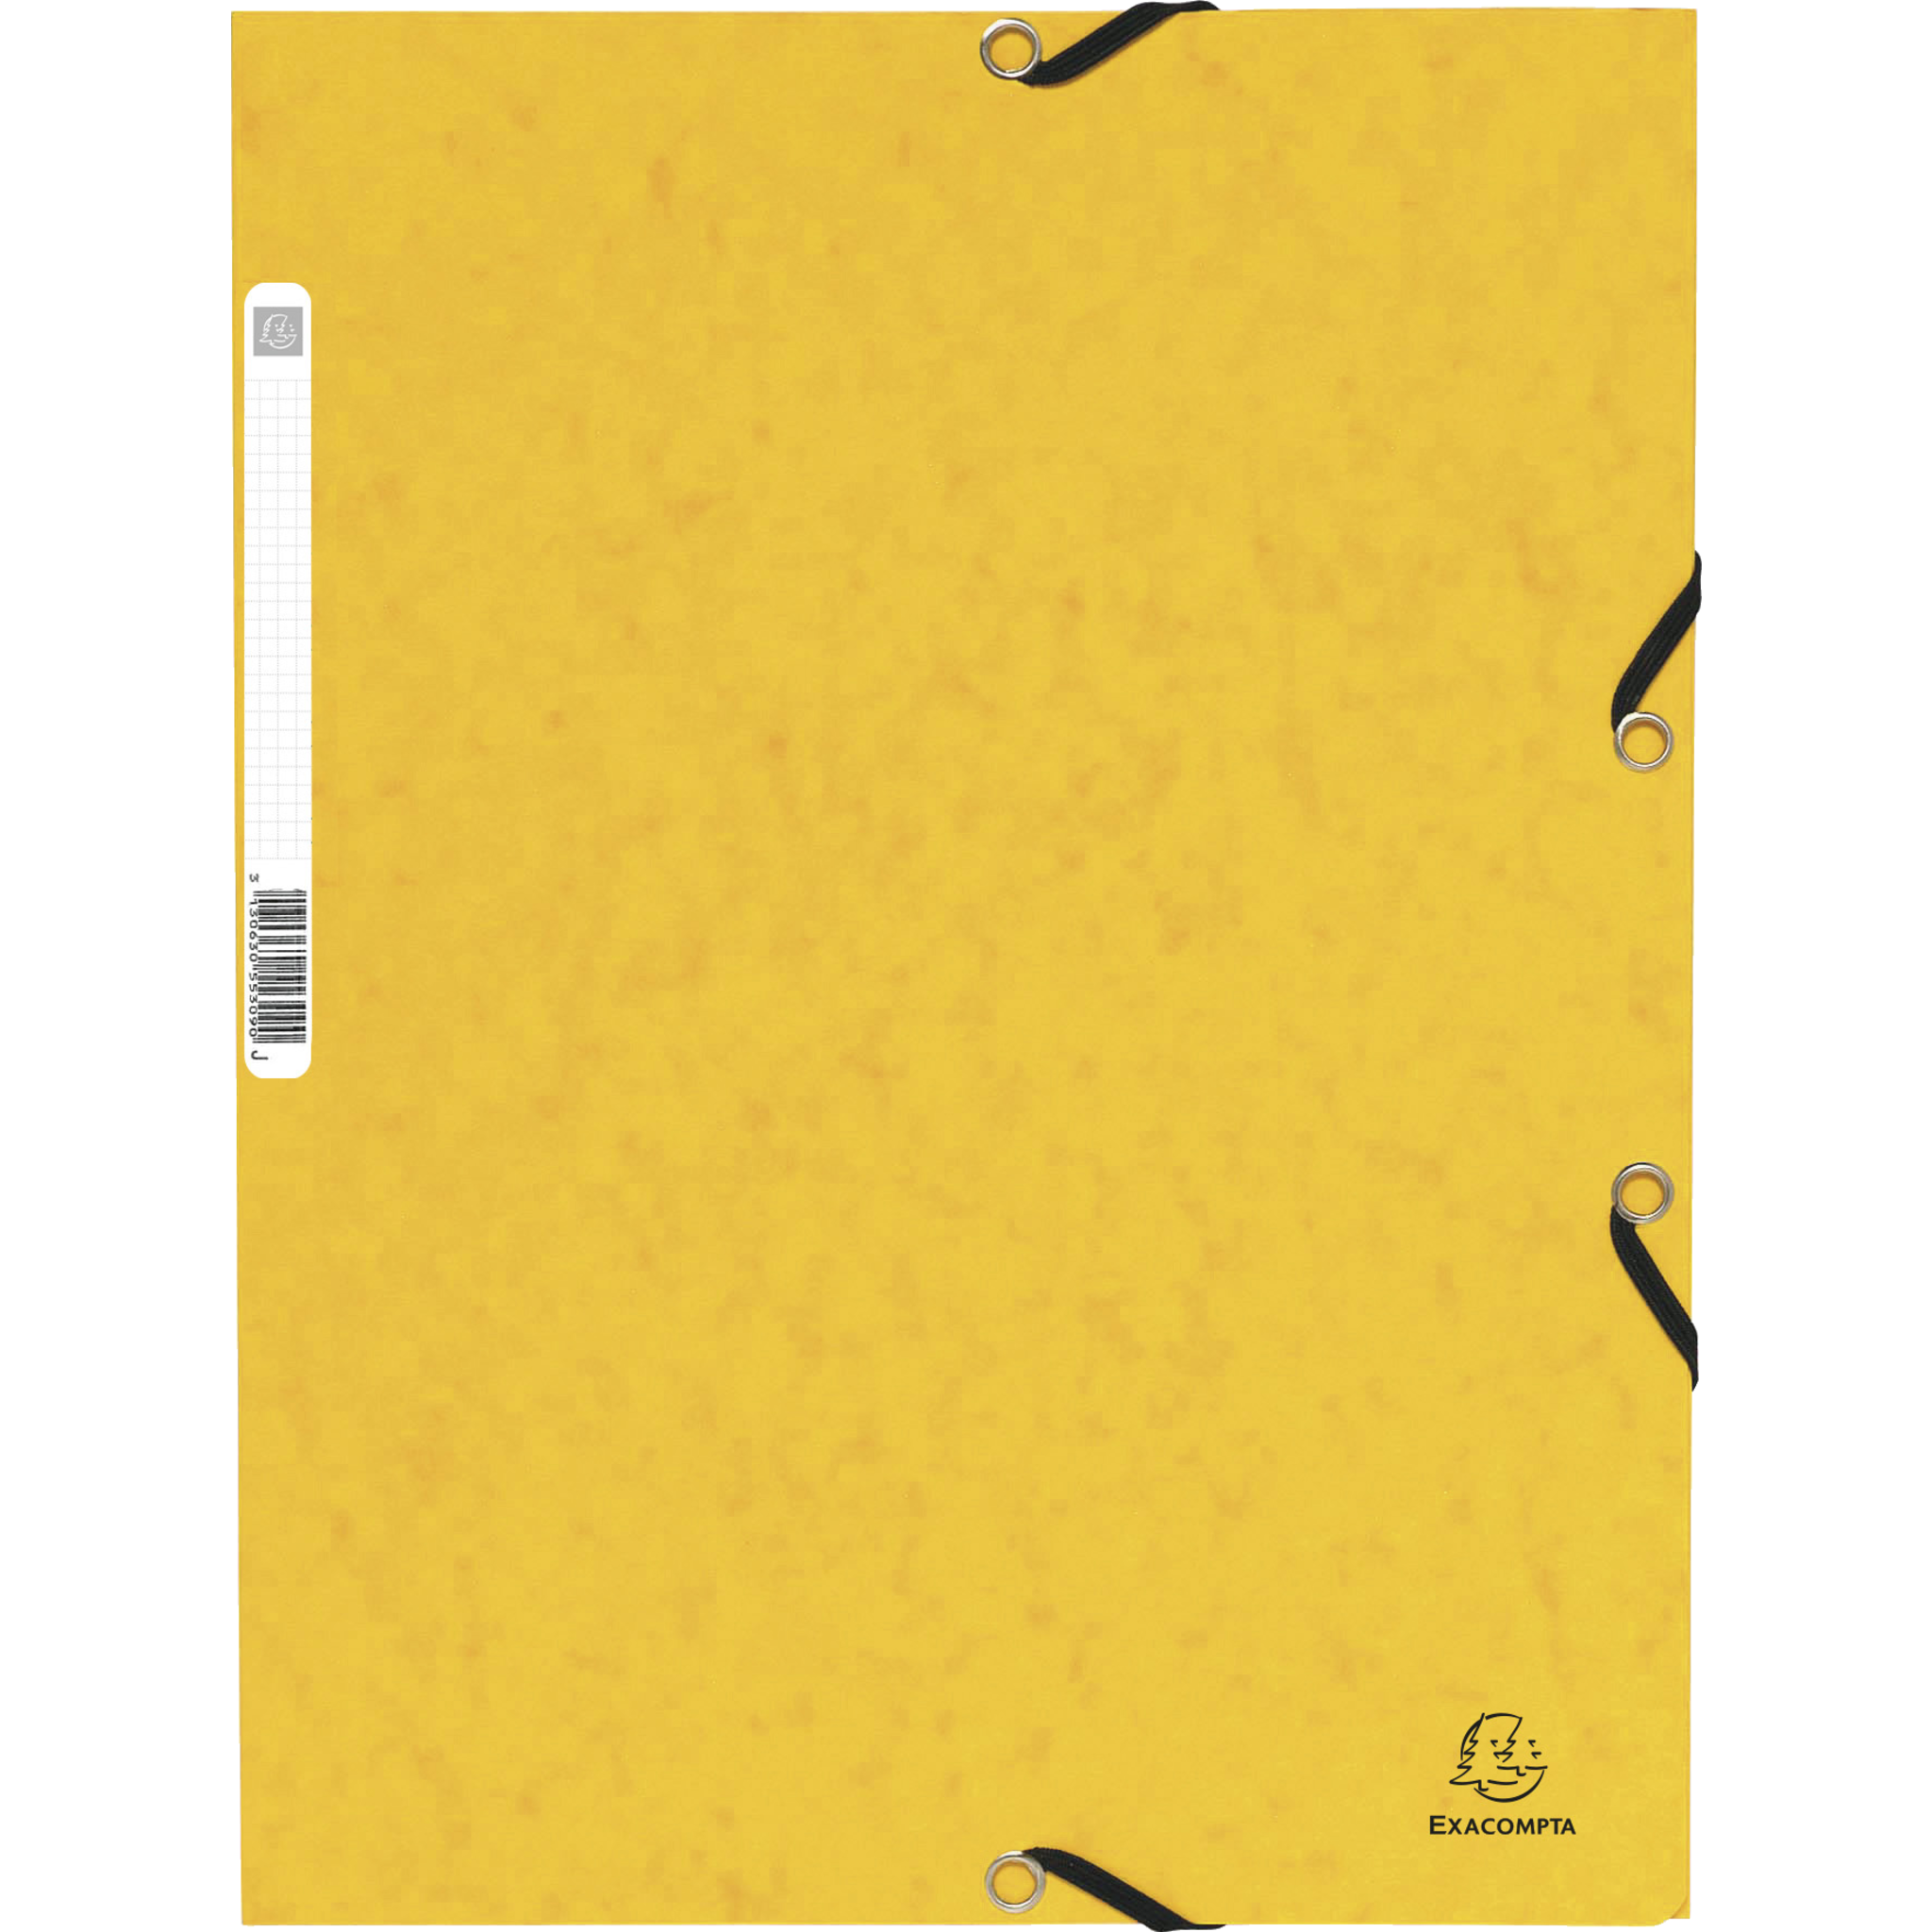 EXACOMPTA Sammelmappe mit Gummizug und 3 Klappen aus Colorspan-Karton 355g/qm, für Format DIN A4 - Gelb